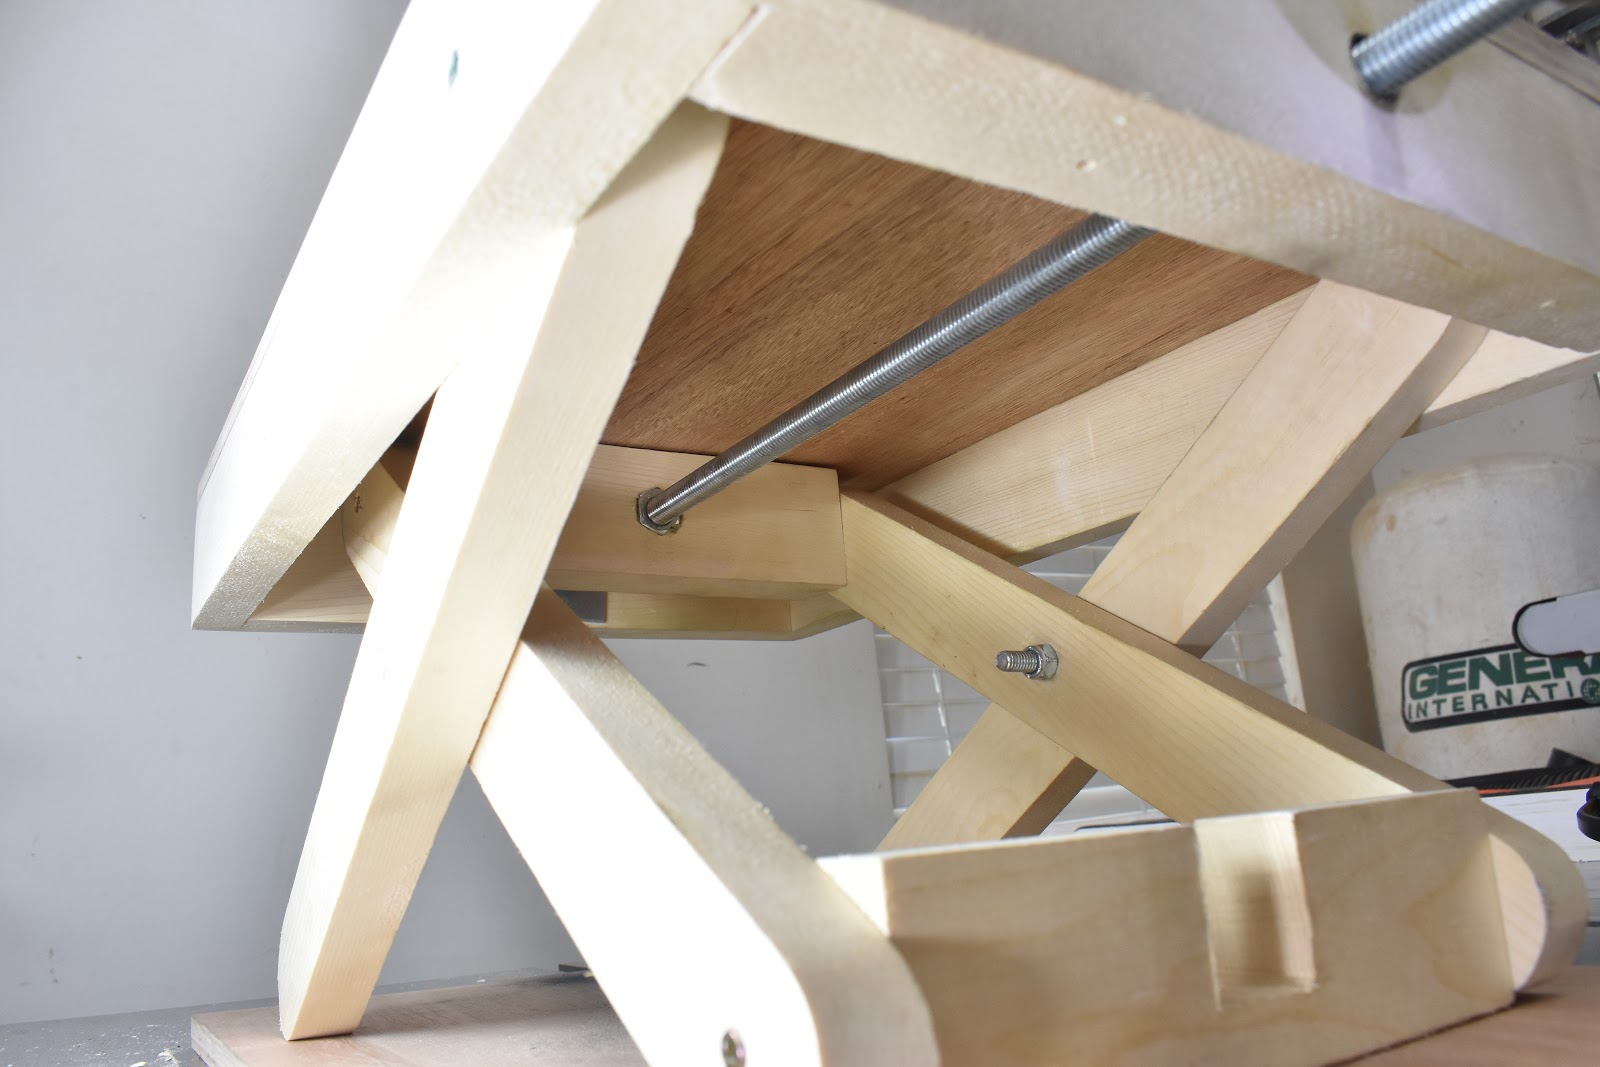 Jax Design: How to Make a Scissor Lift Table